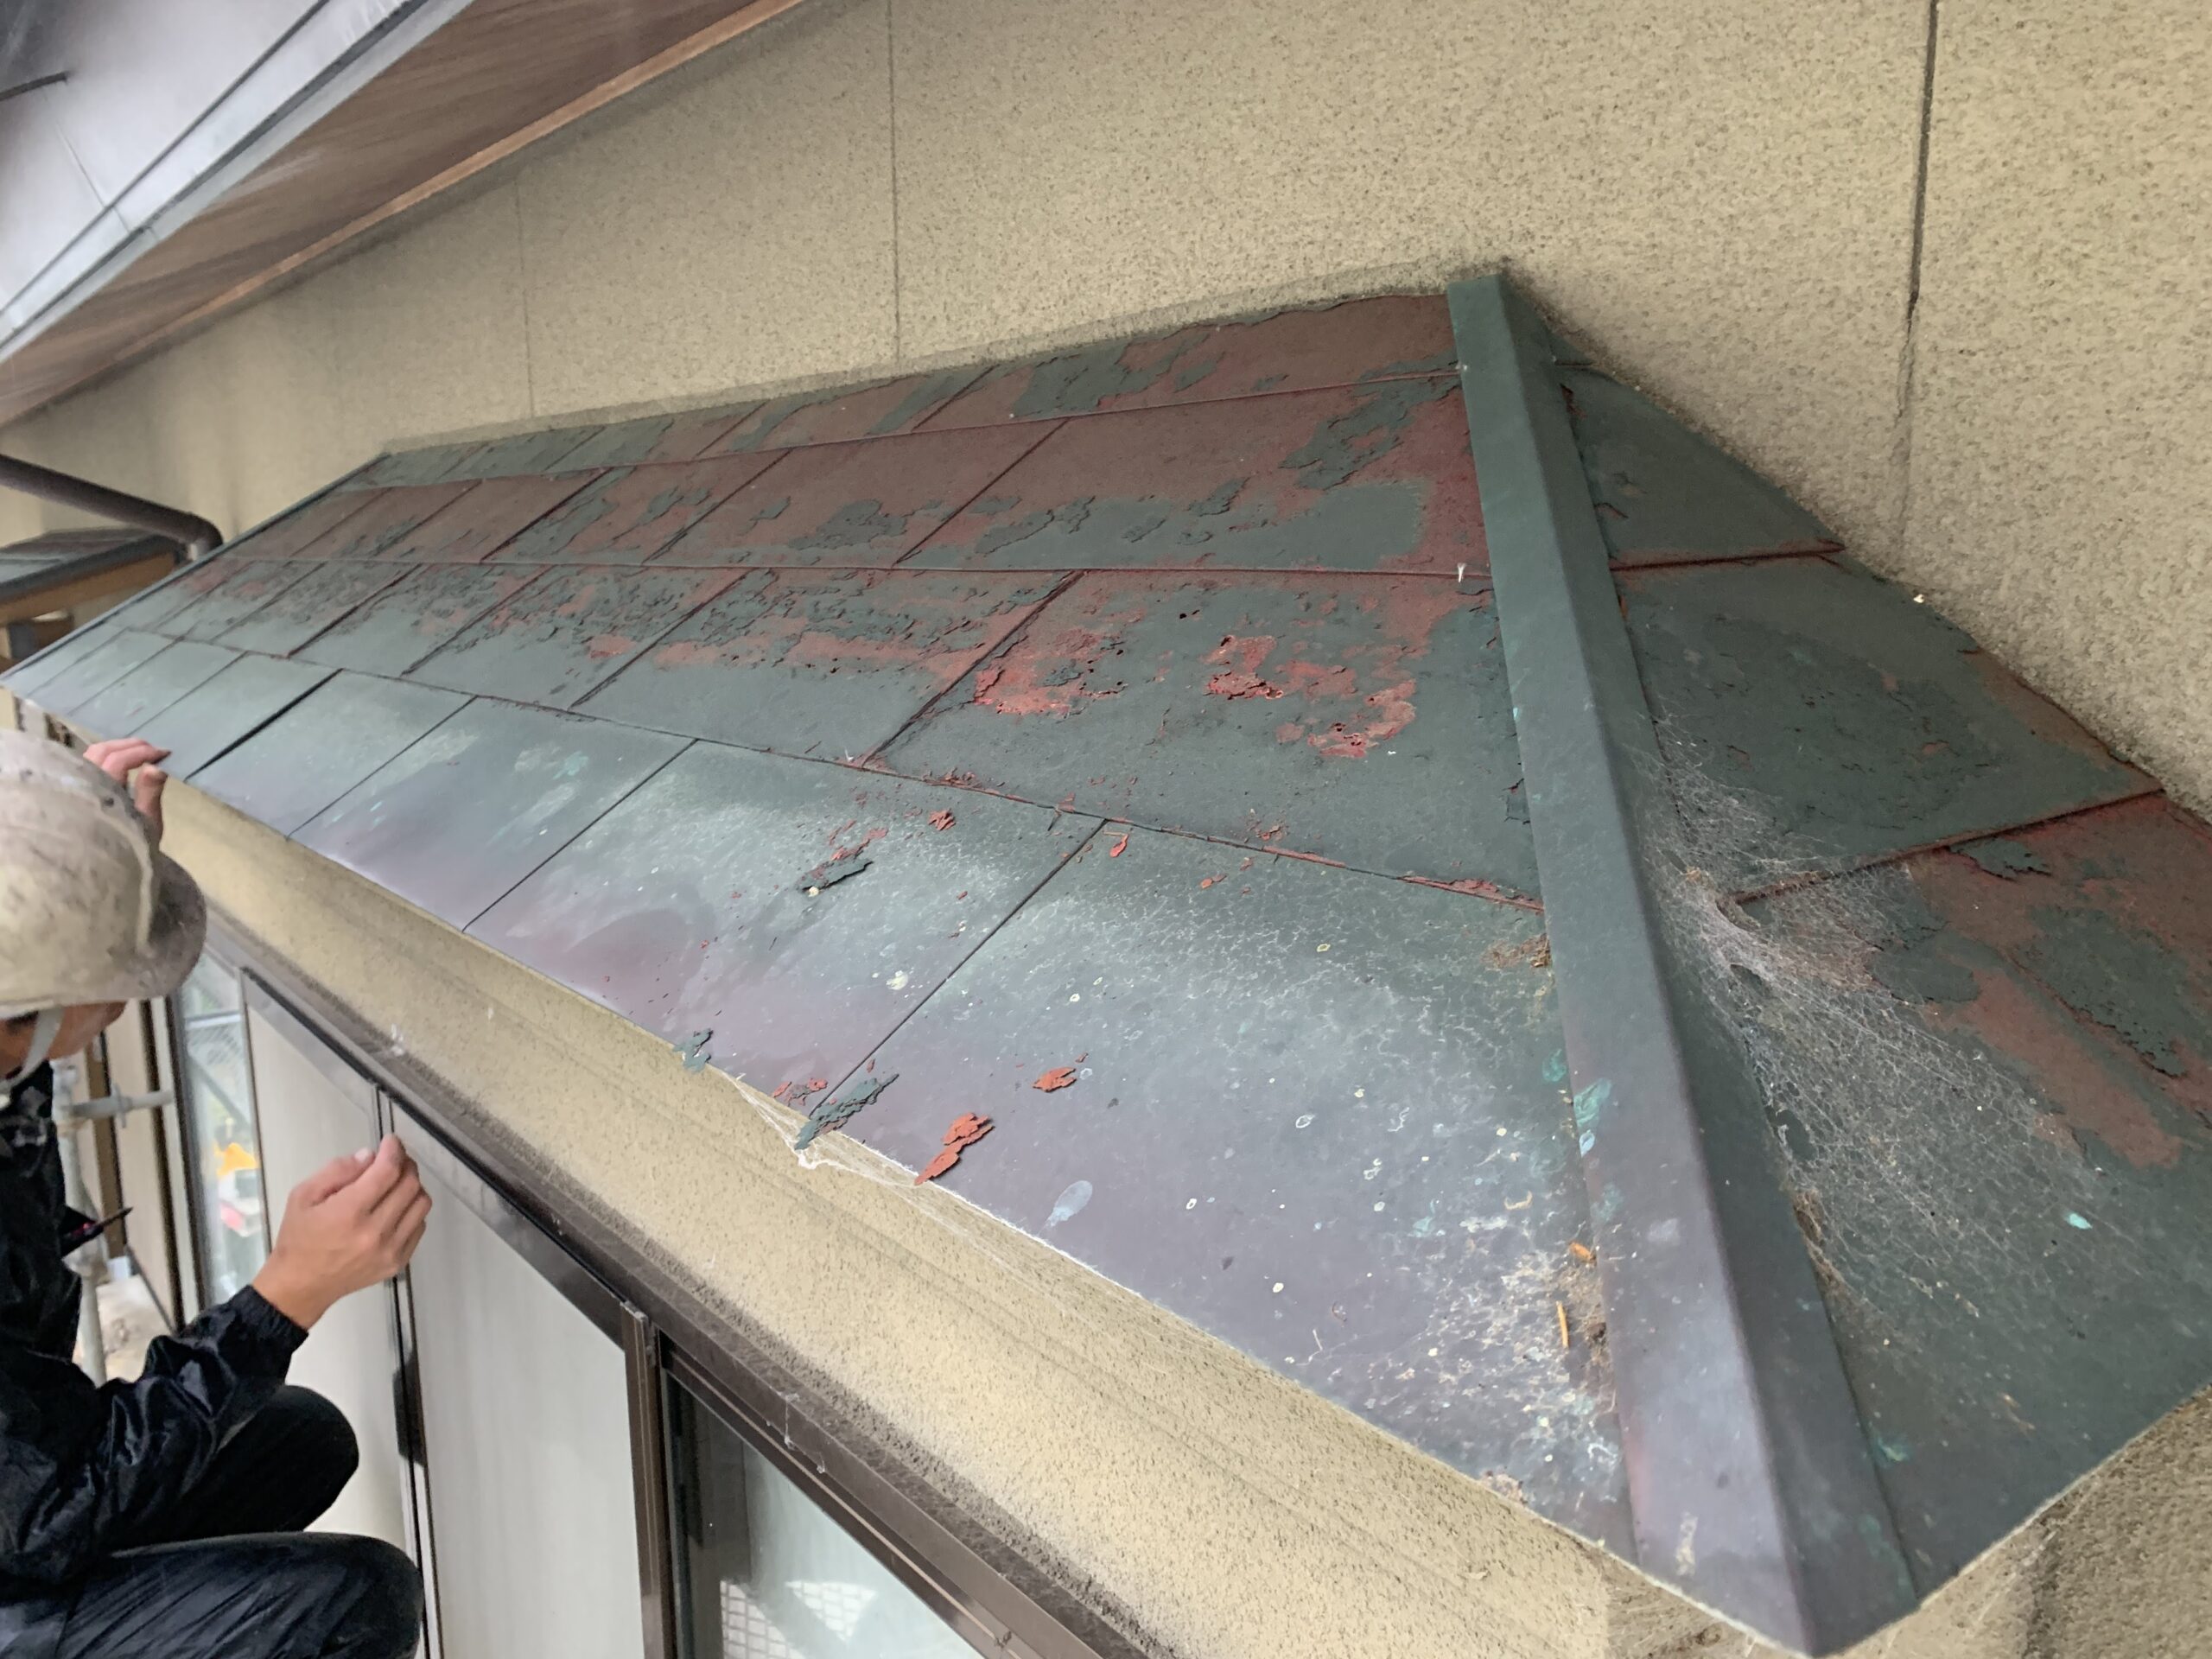 庇の修理、屋根の修理に困ったときは塗装屋ひらまつへご相談ください。